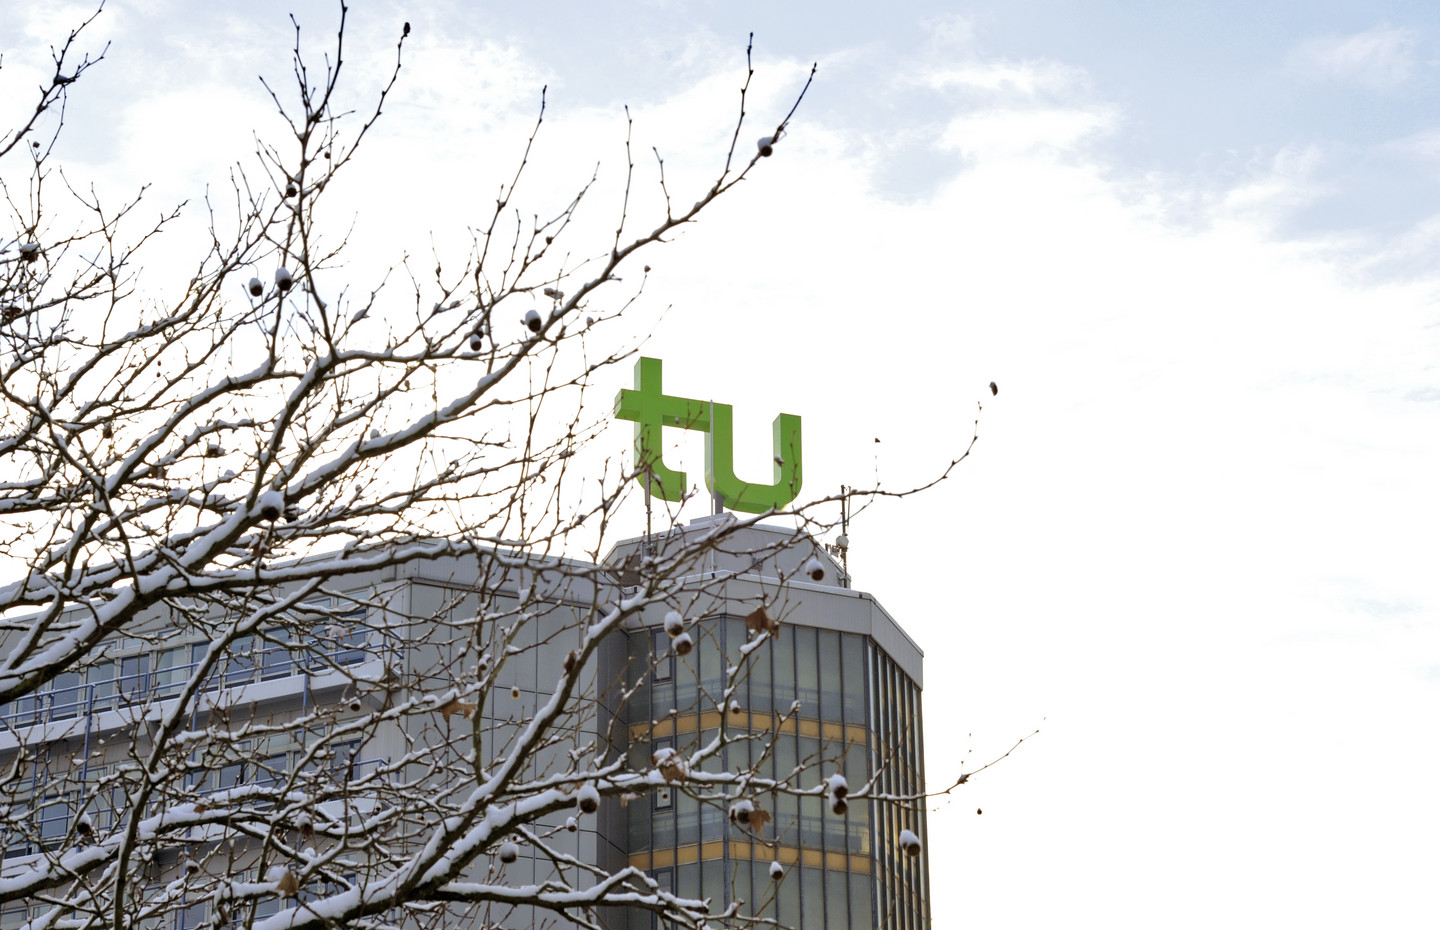 Die obere Hälfte des Mathetowers mit grünem TU-Logo an einem sonnigen Wintertag. Auf der linken Seite ragen schneebedeckte Äste eines Baumes ins Bild.